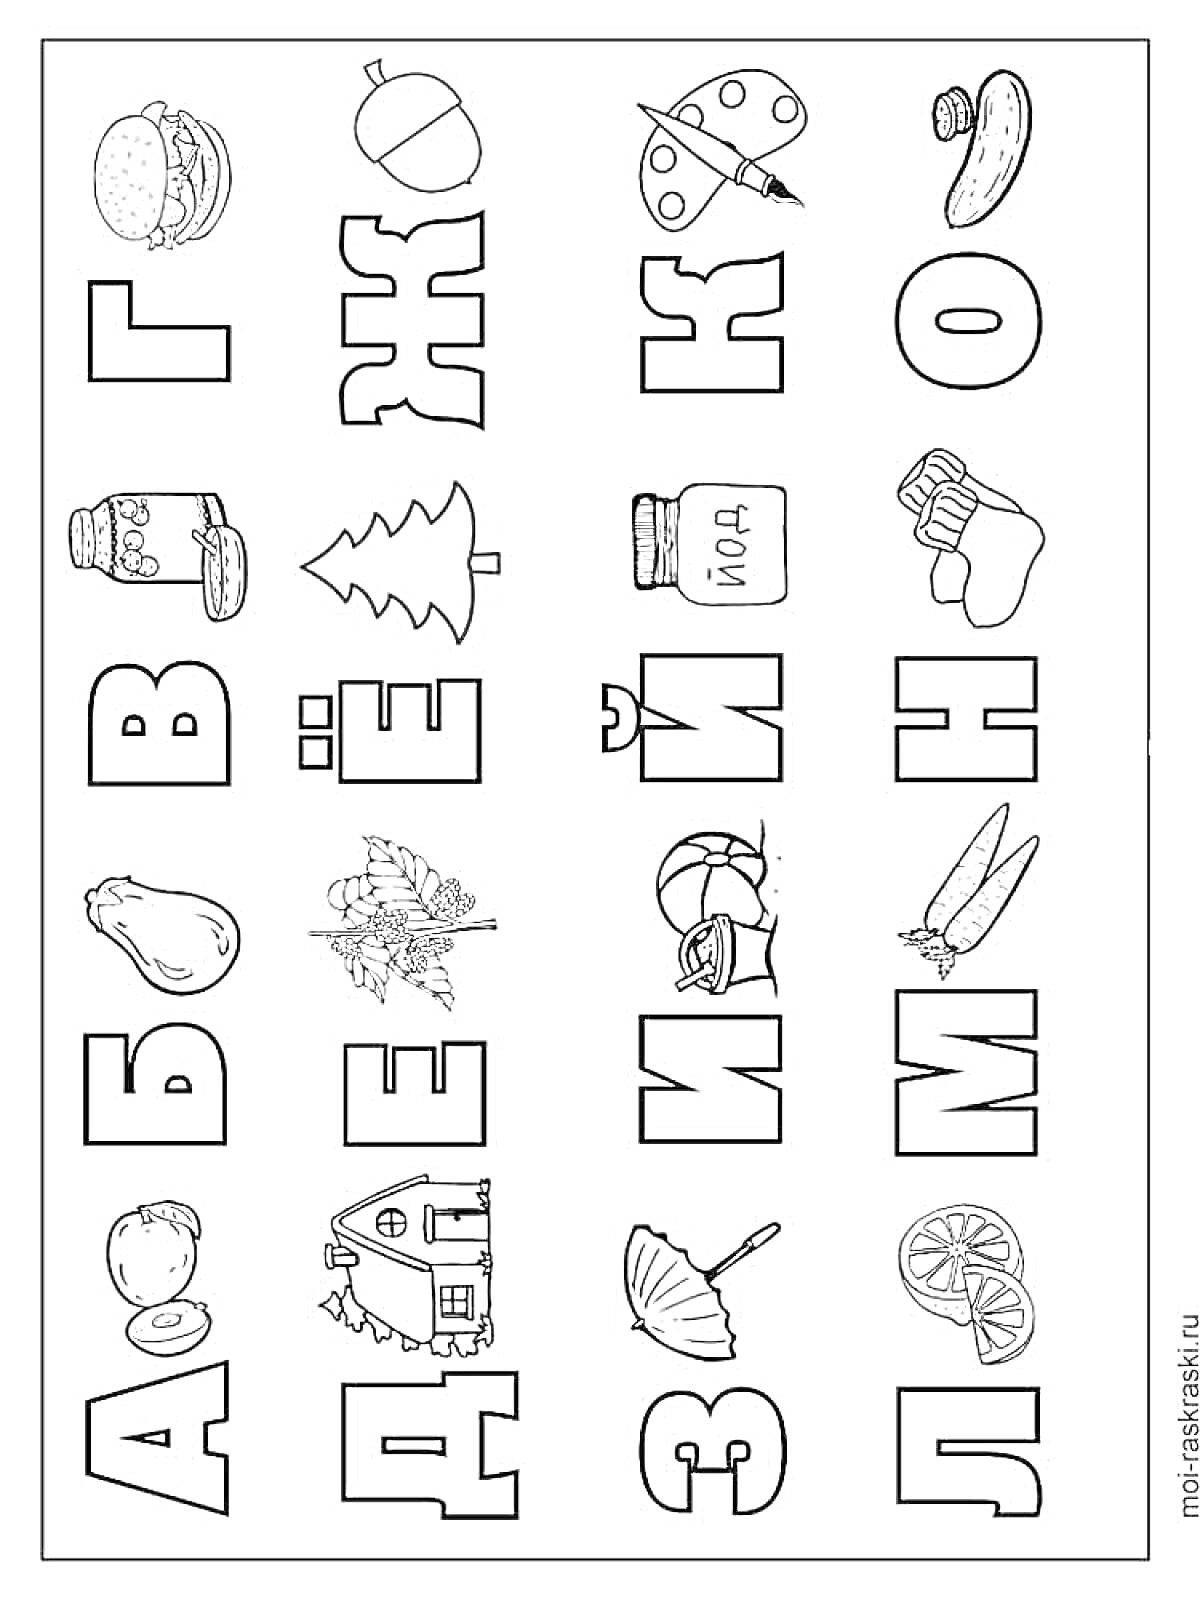 Раскраска Алфавит с изображениями предметов, начинающихся на соответствующие буквы (А - арбуз, Б - ботинок, В - вагон, Г - гриб, Д - дом, Е - ёлка, Ё - ёжик, Ж - жук, З - зонтик, И - иголка, Й - йод, К - кастрюля, Л - лимон, М - морковь, Н - носок, О - огурец)